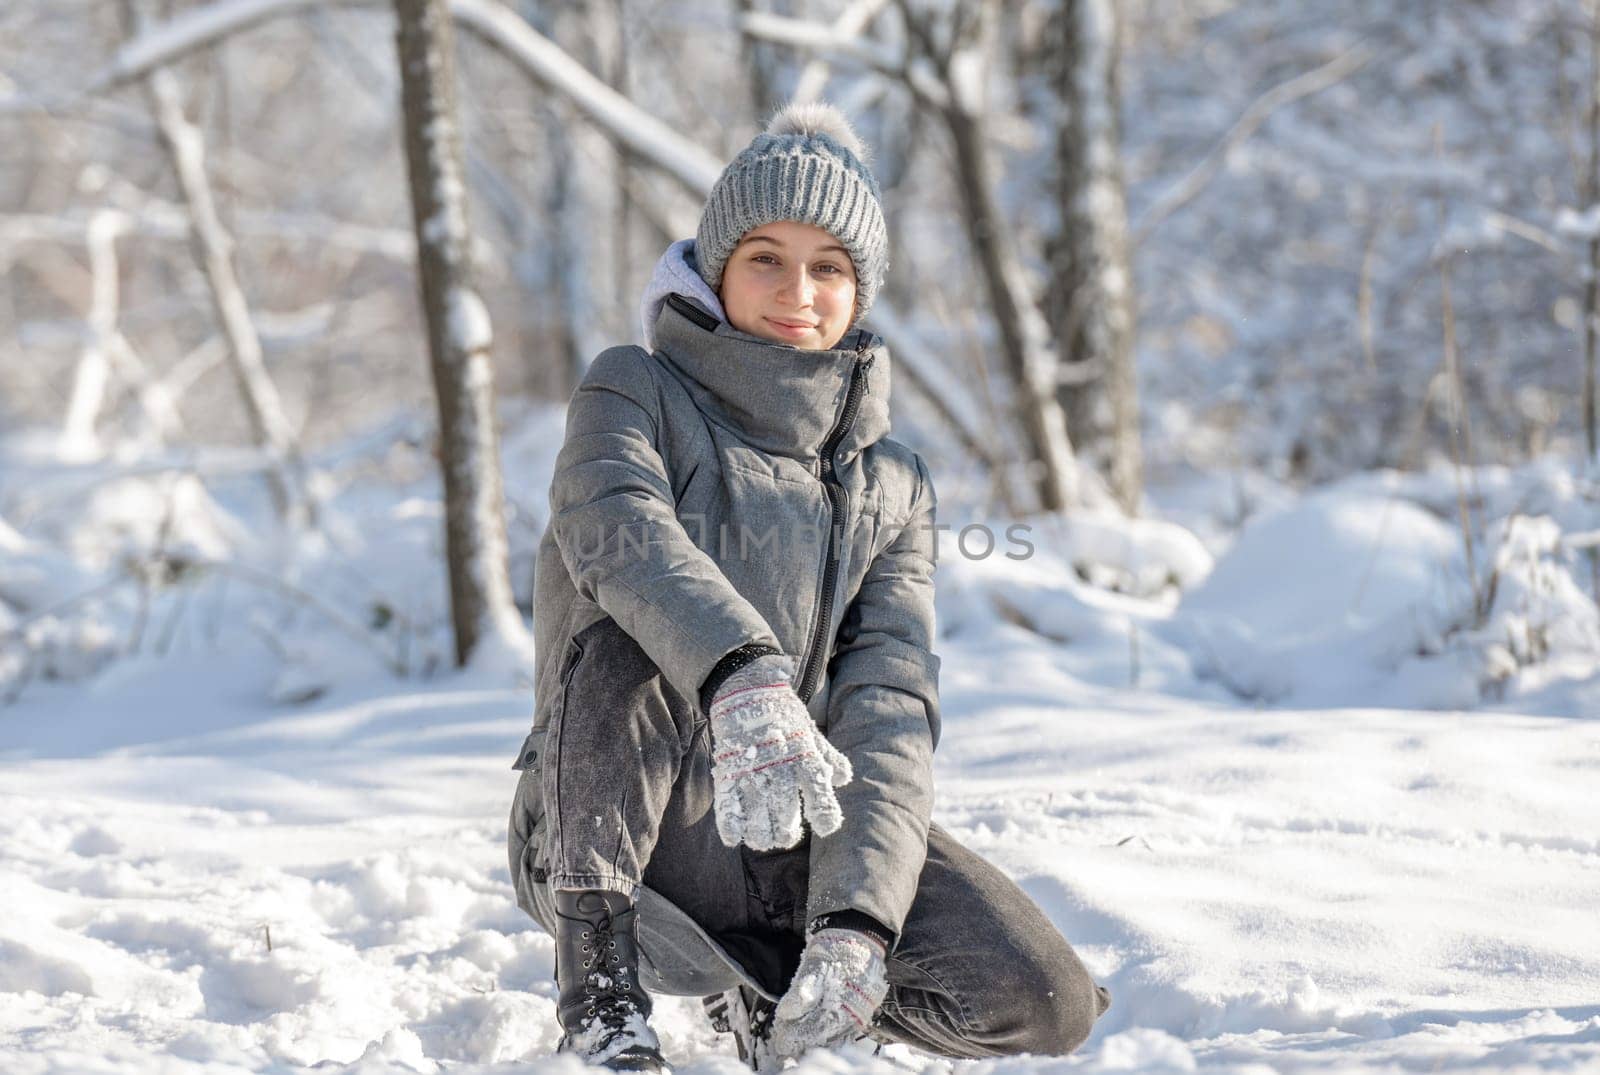 Teenage Girl In Winter Forest by tan4ikk1